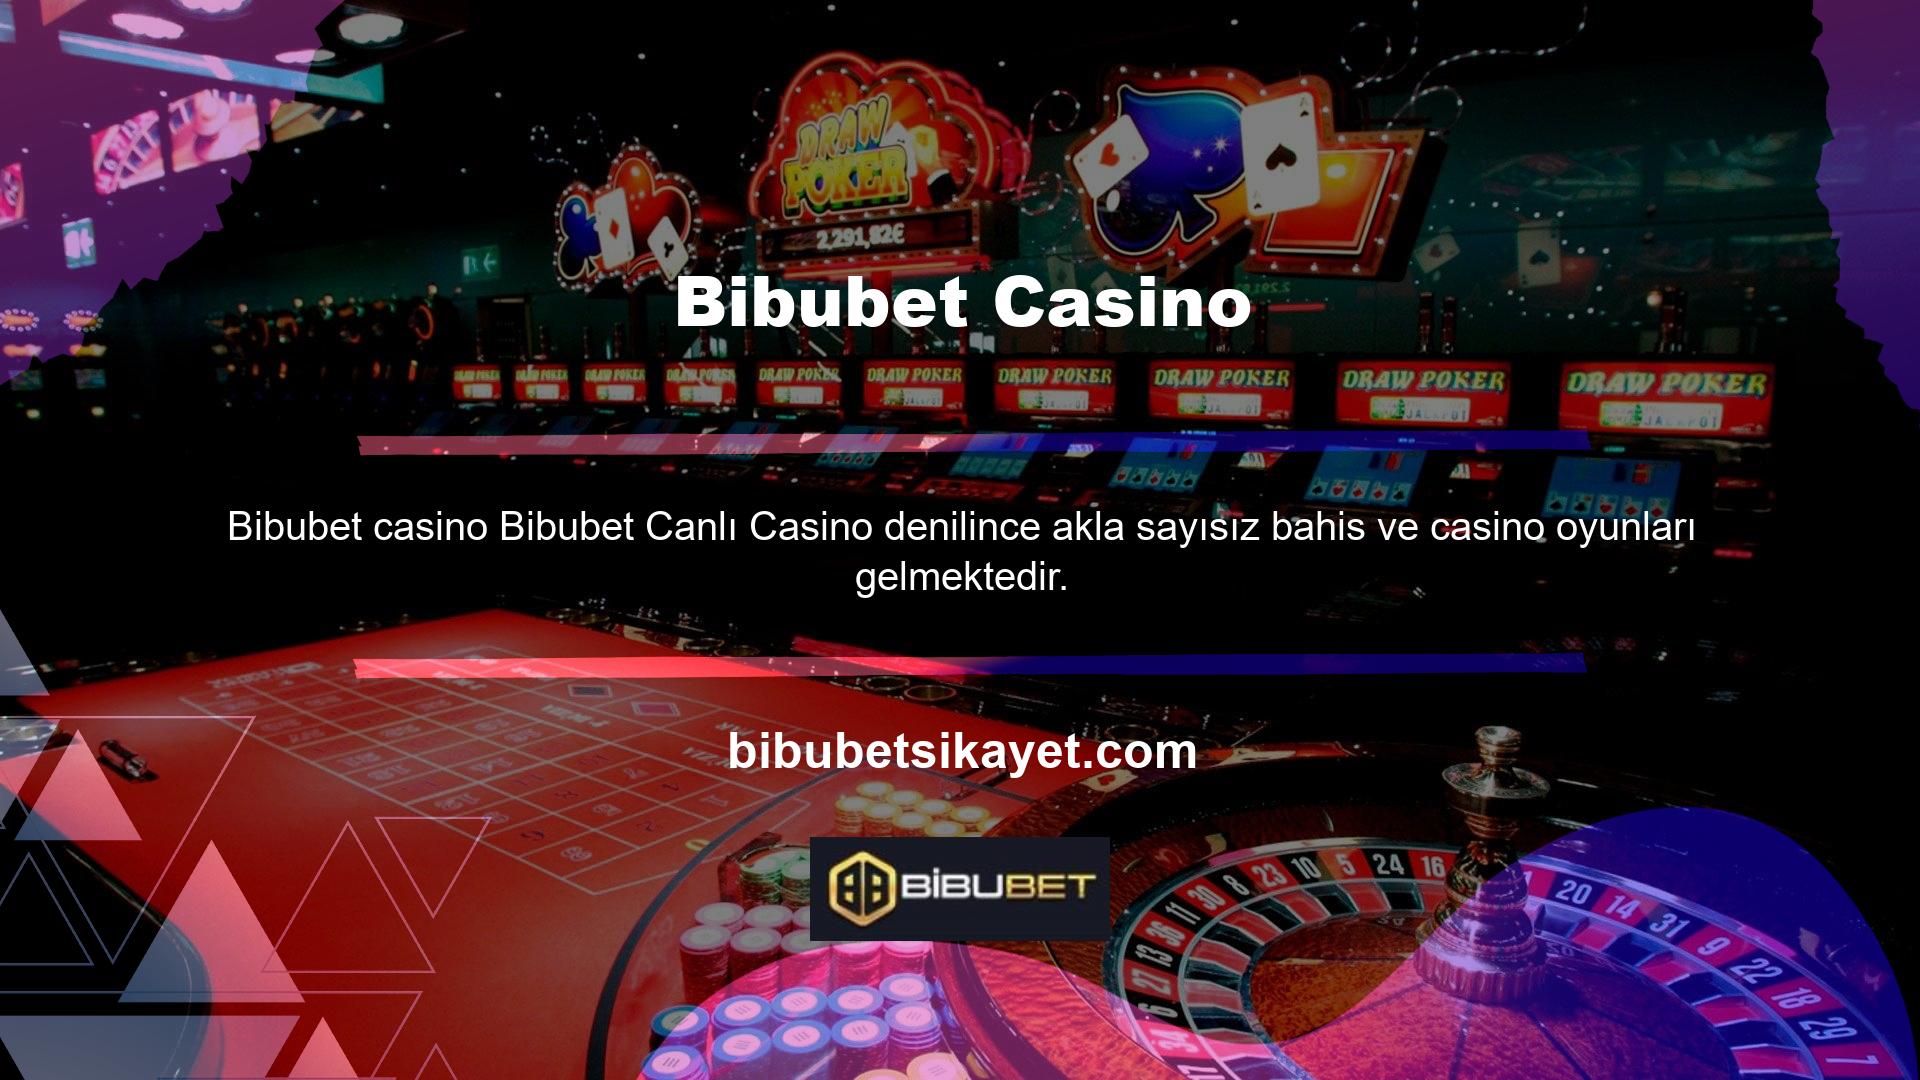 Canlı casino oyun seçeneklerine bakarak bunu görebilirsiniz